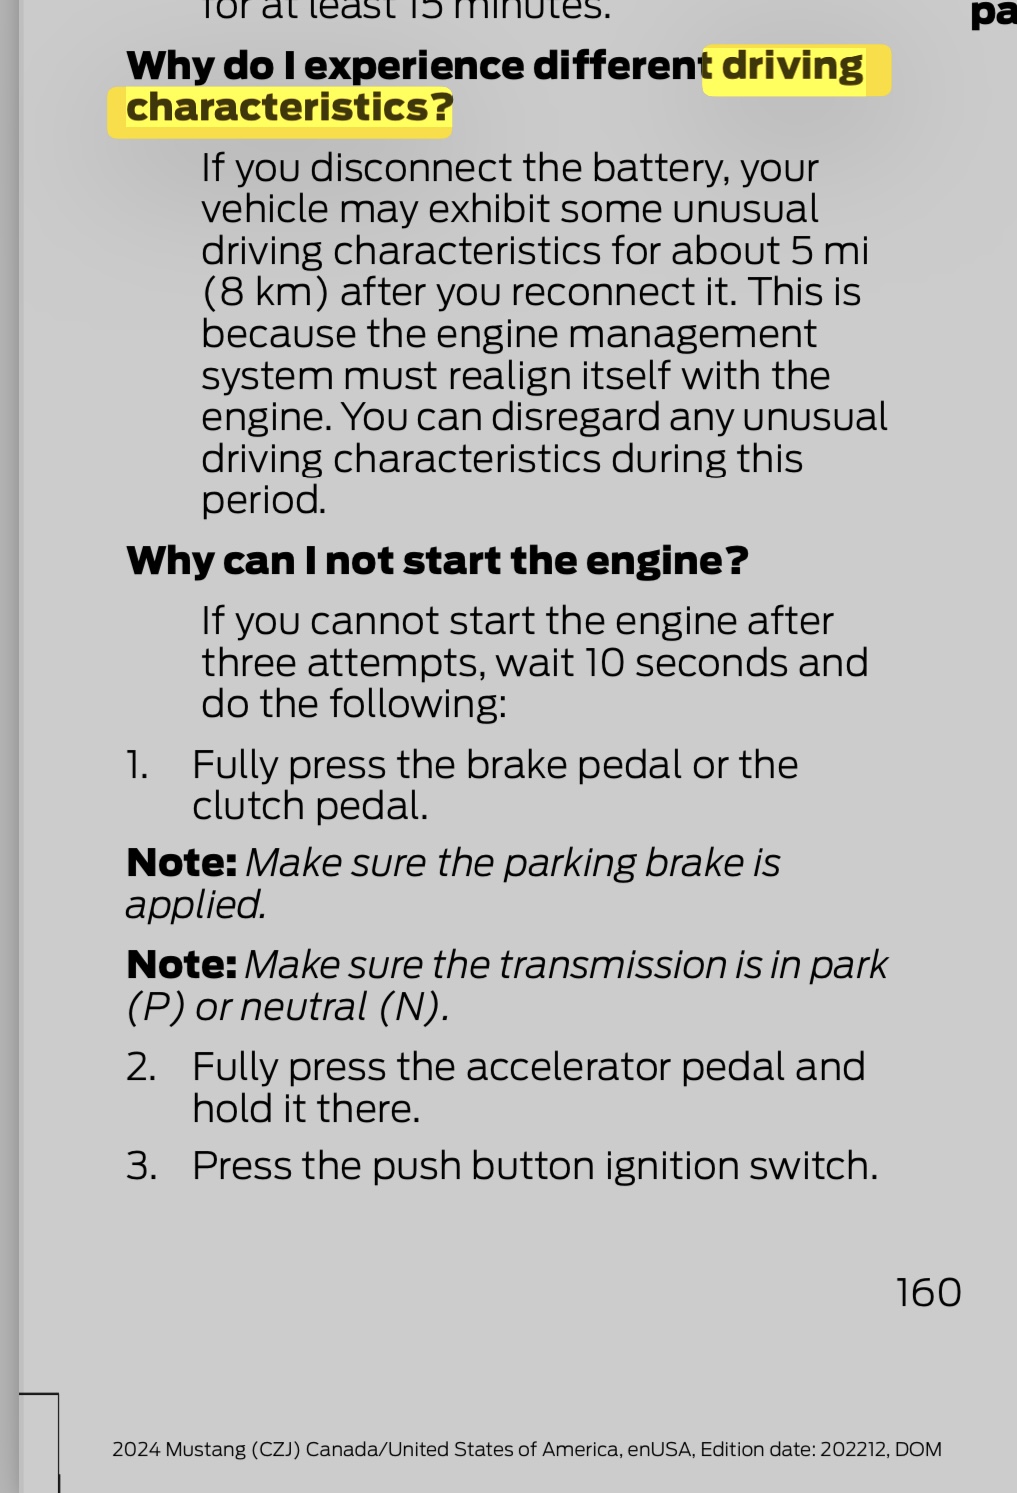 S650 Mustang GT Break in Procedure IMG_1594